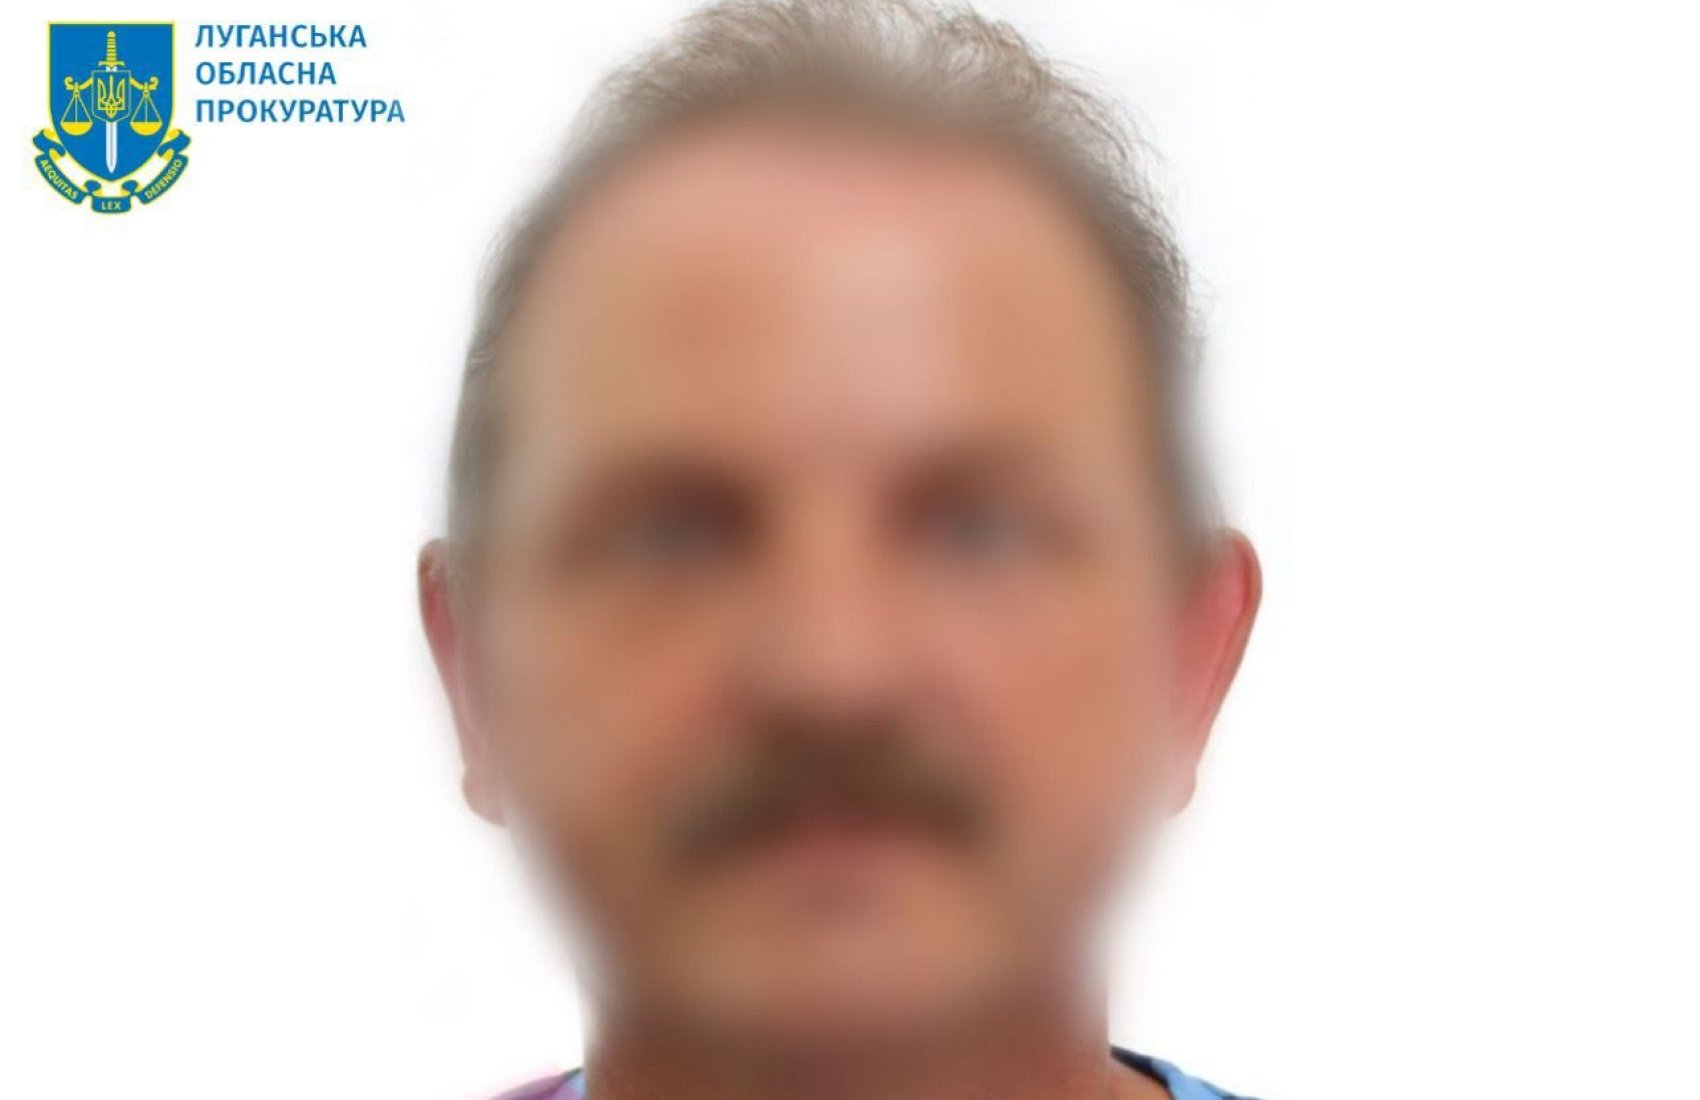 Пішов у колаборанти й захопив активи “Нібулону”: керівник агрокомпанії на Луганщині отримав підозру від СБУ